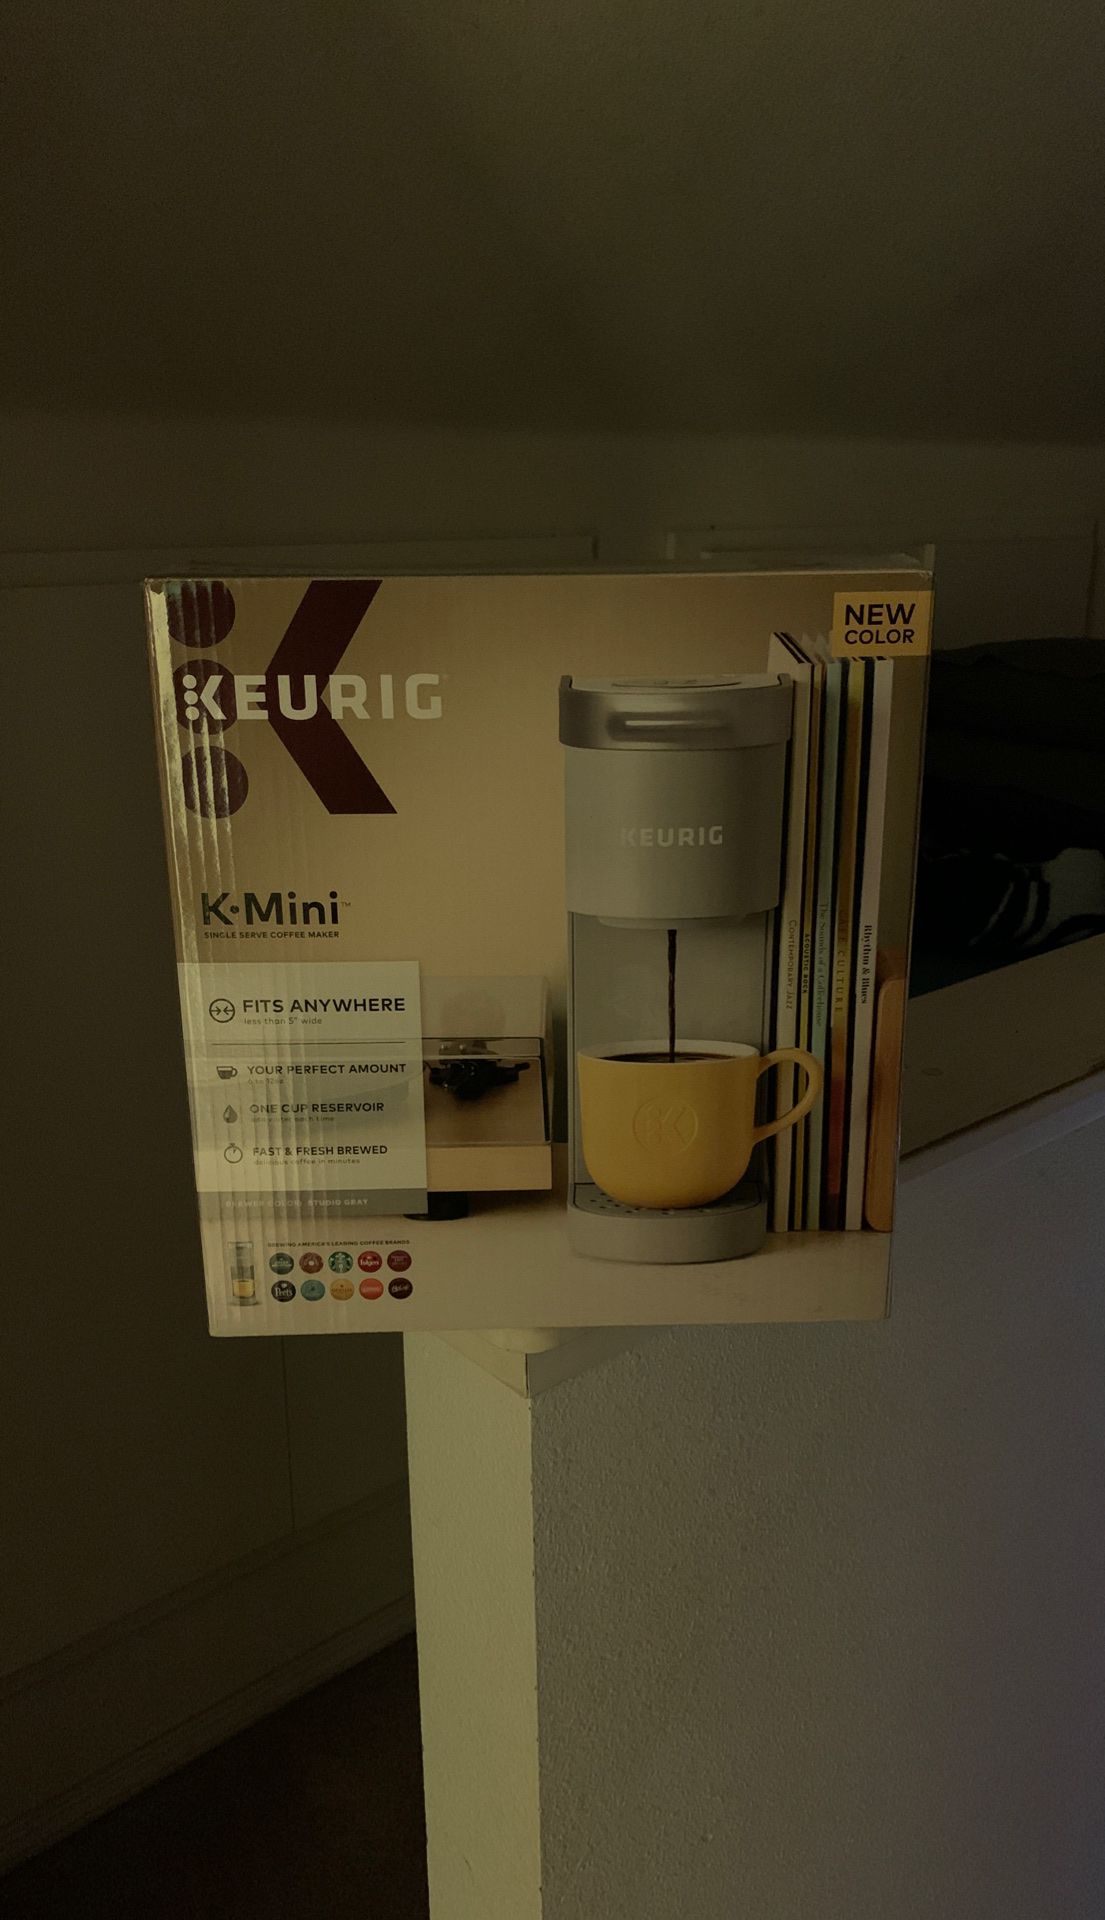 Keurig k-mini in studio gray color! Brand new, factory sealed in retail packaging.